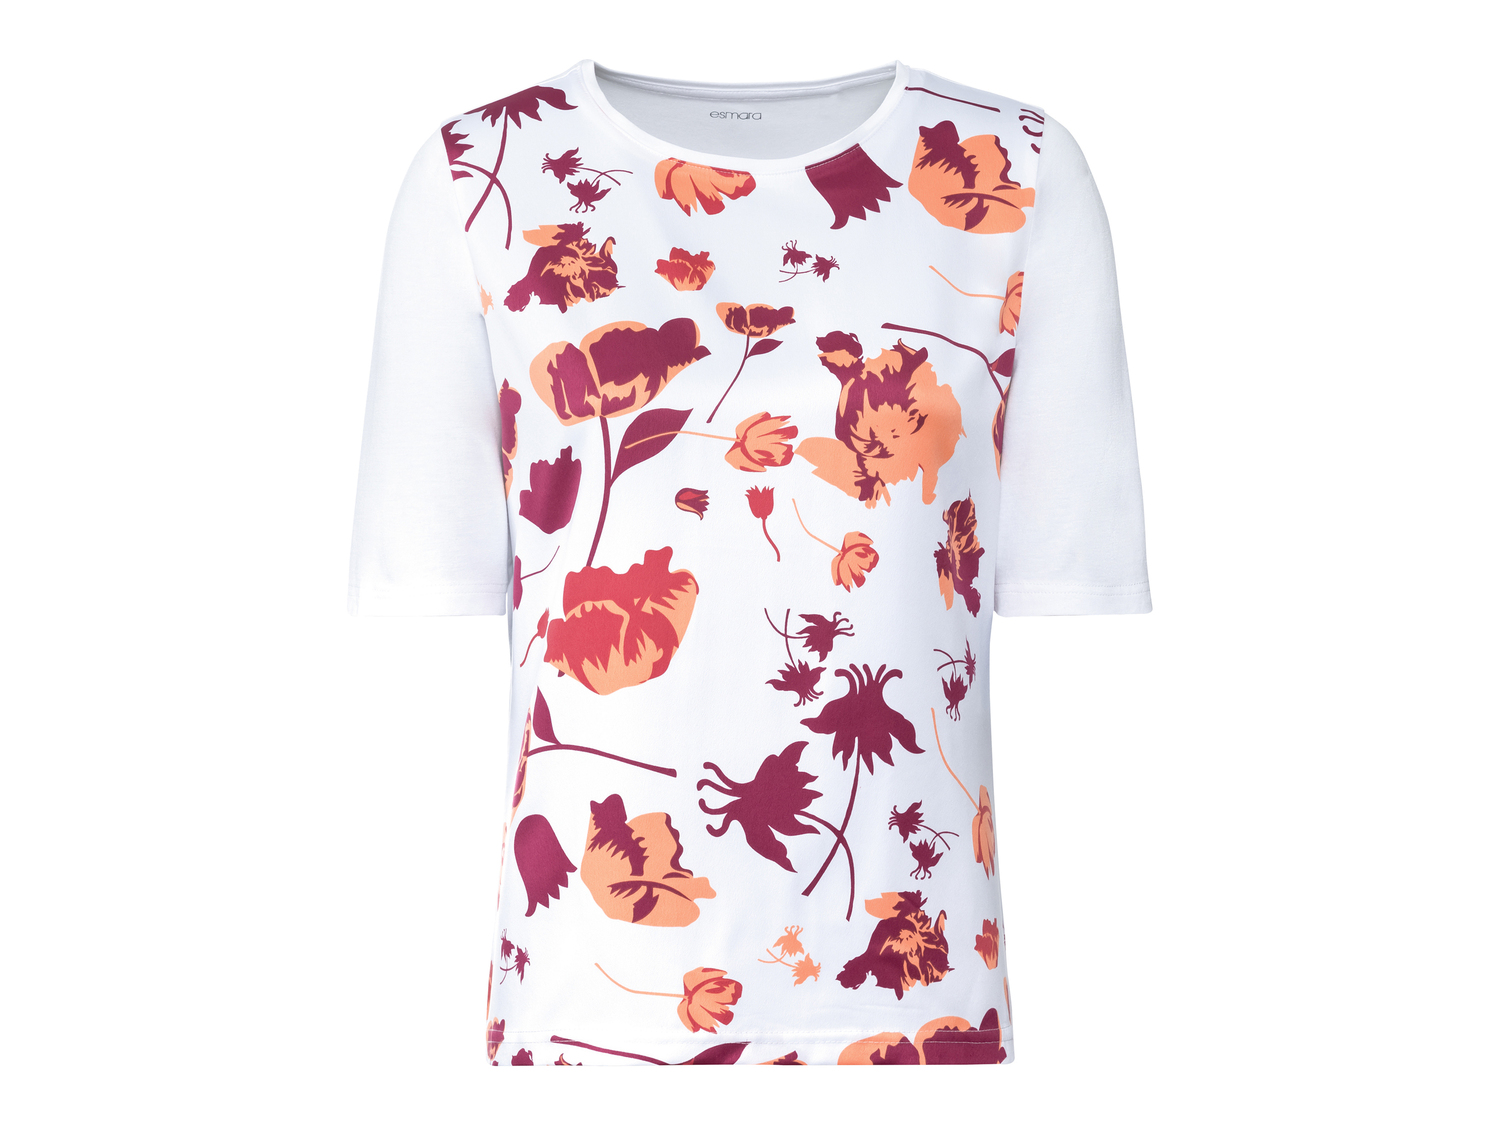 T-shirt da donna Esmara, prezzo 6.99 &#8364; 
Misure: S-L
Taglie disponibili

Caratteristiche

- ...